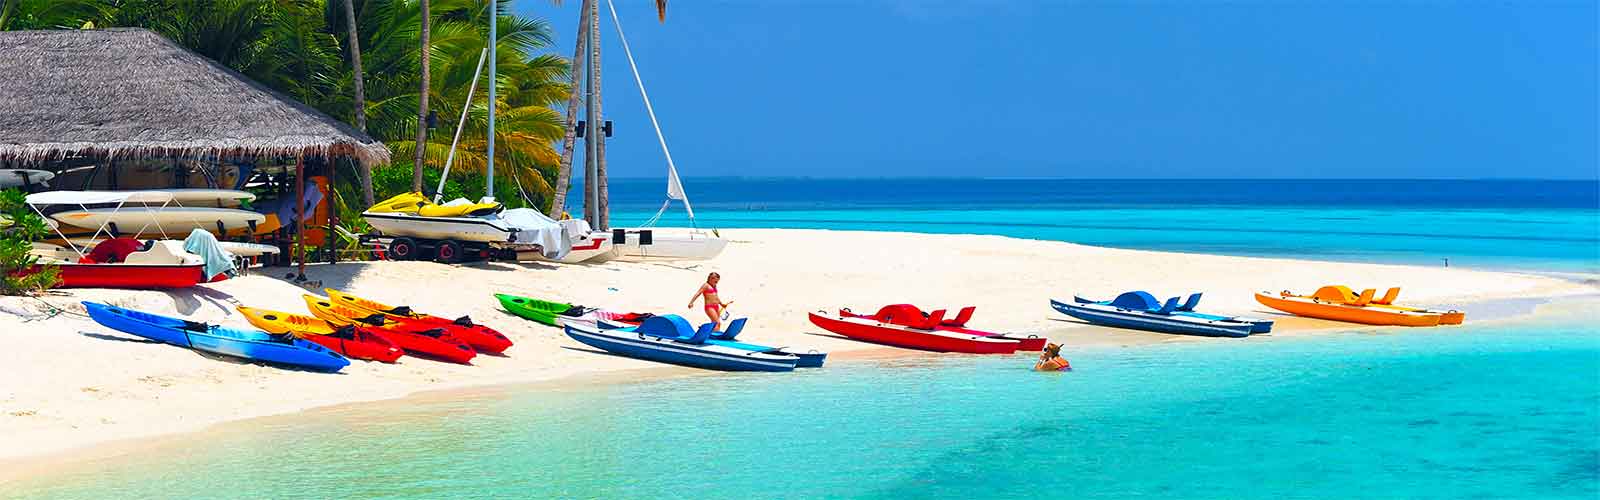 Partir aux maldives pour les loisirs aquatiques